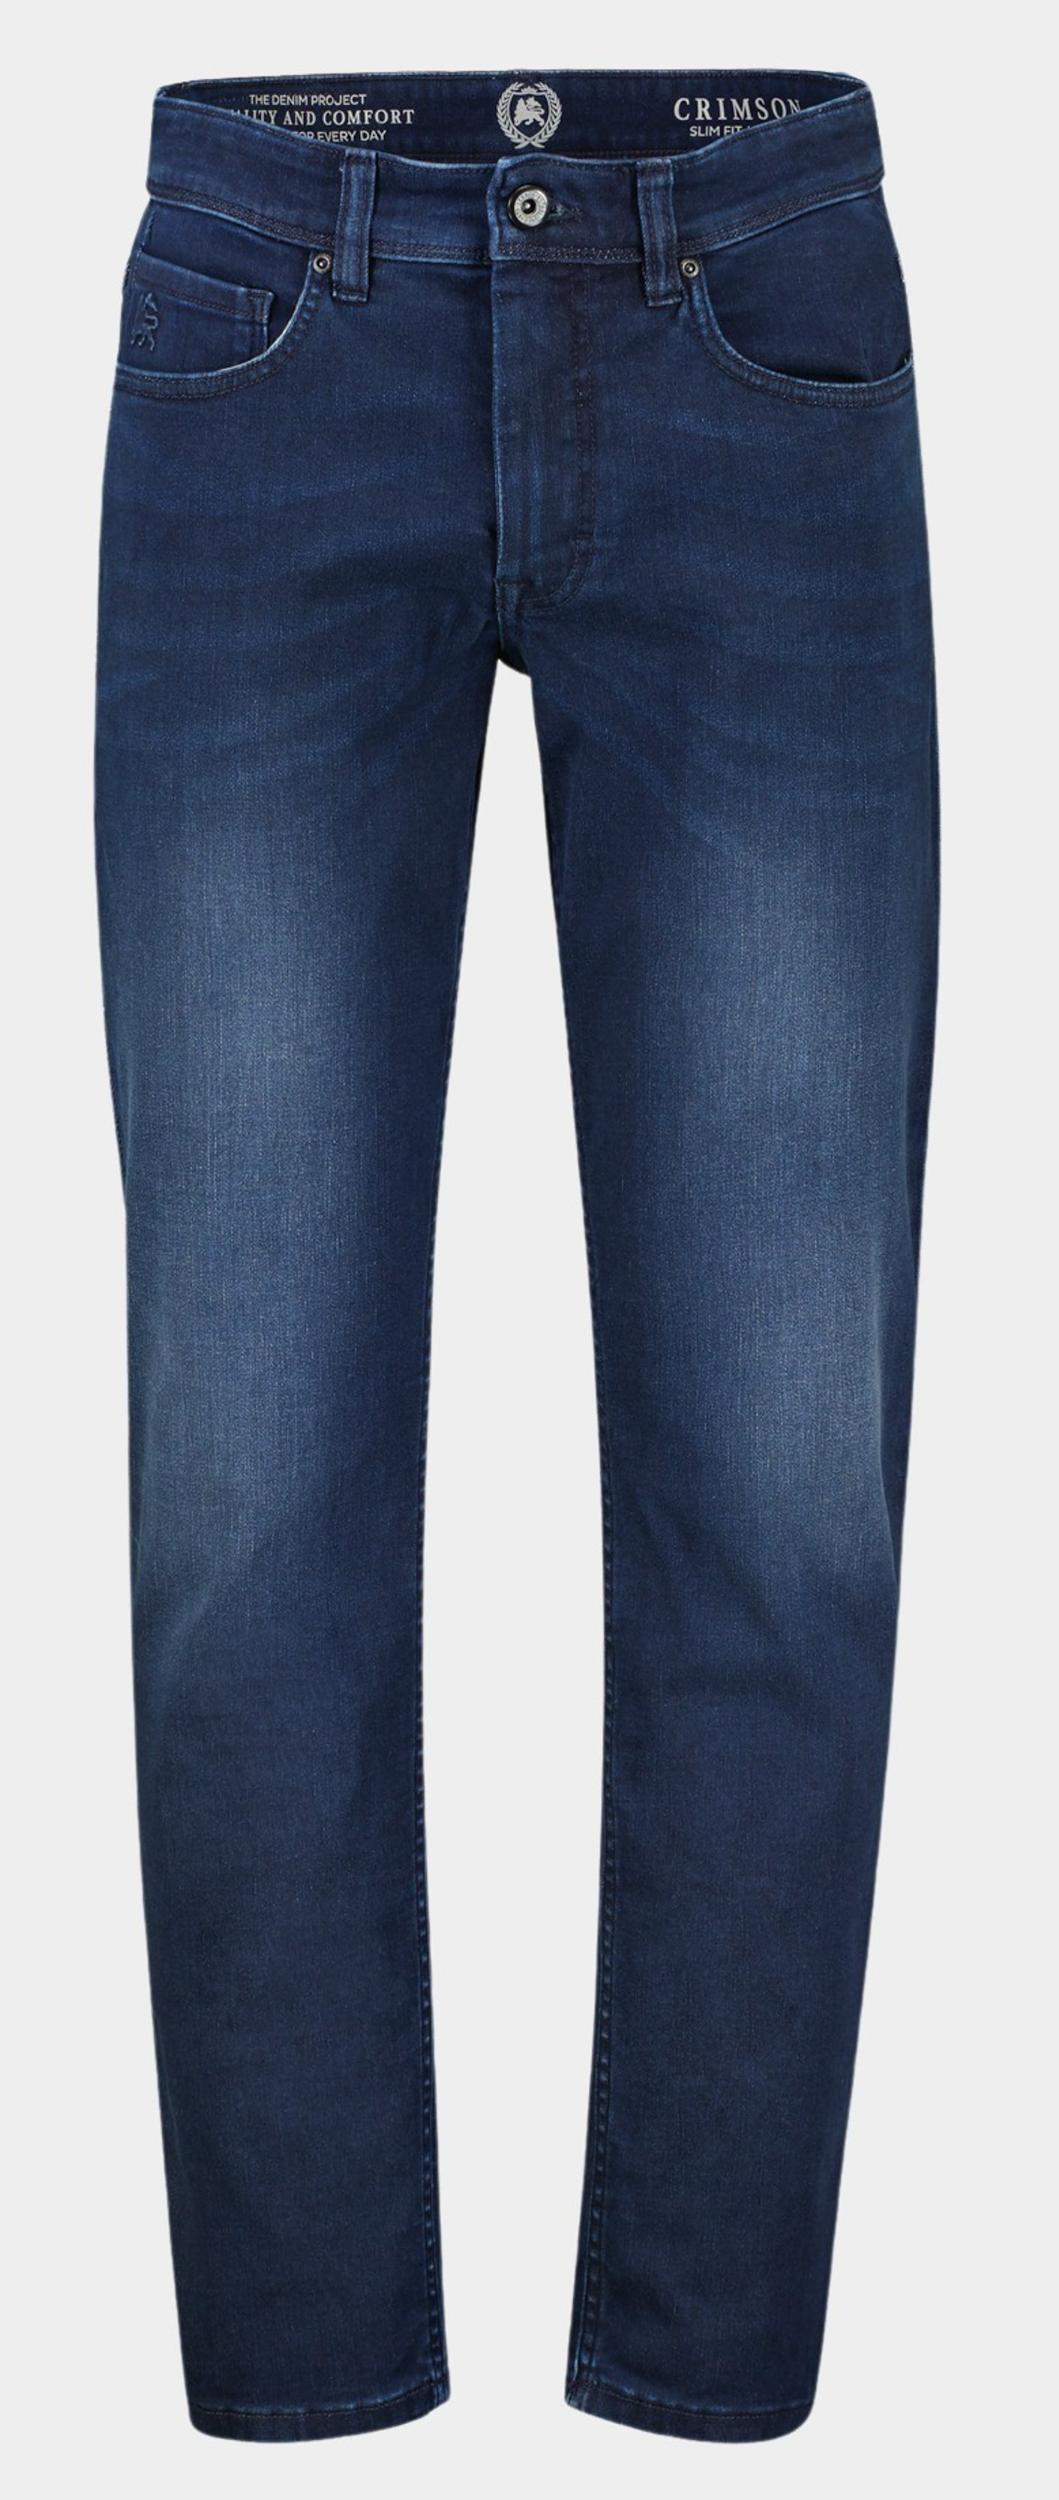 Lerros 5-Pocket Jeans Blauw DENIMHOSE LANG 2009362/495